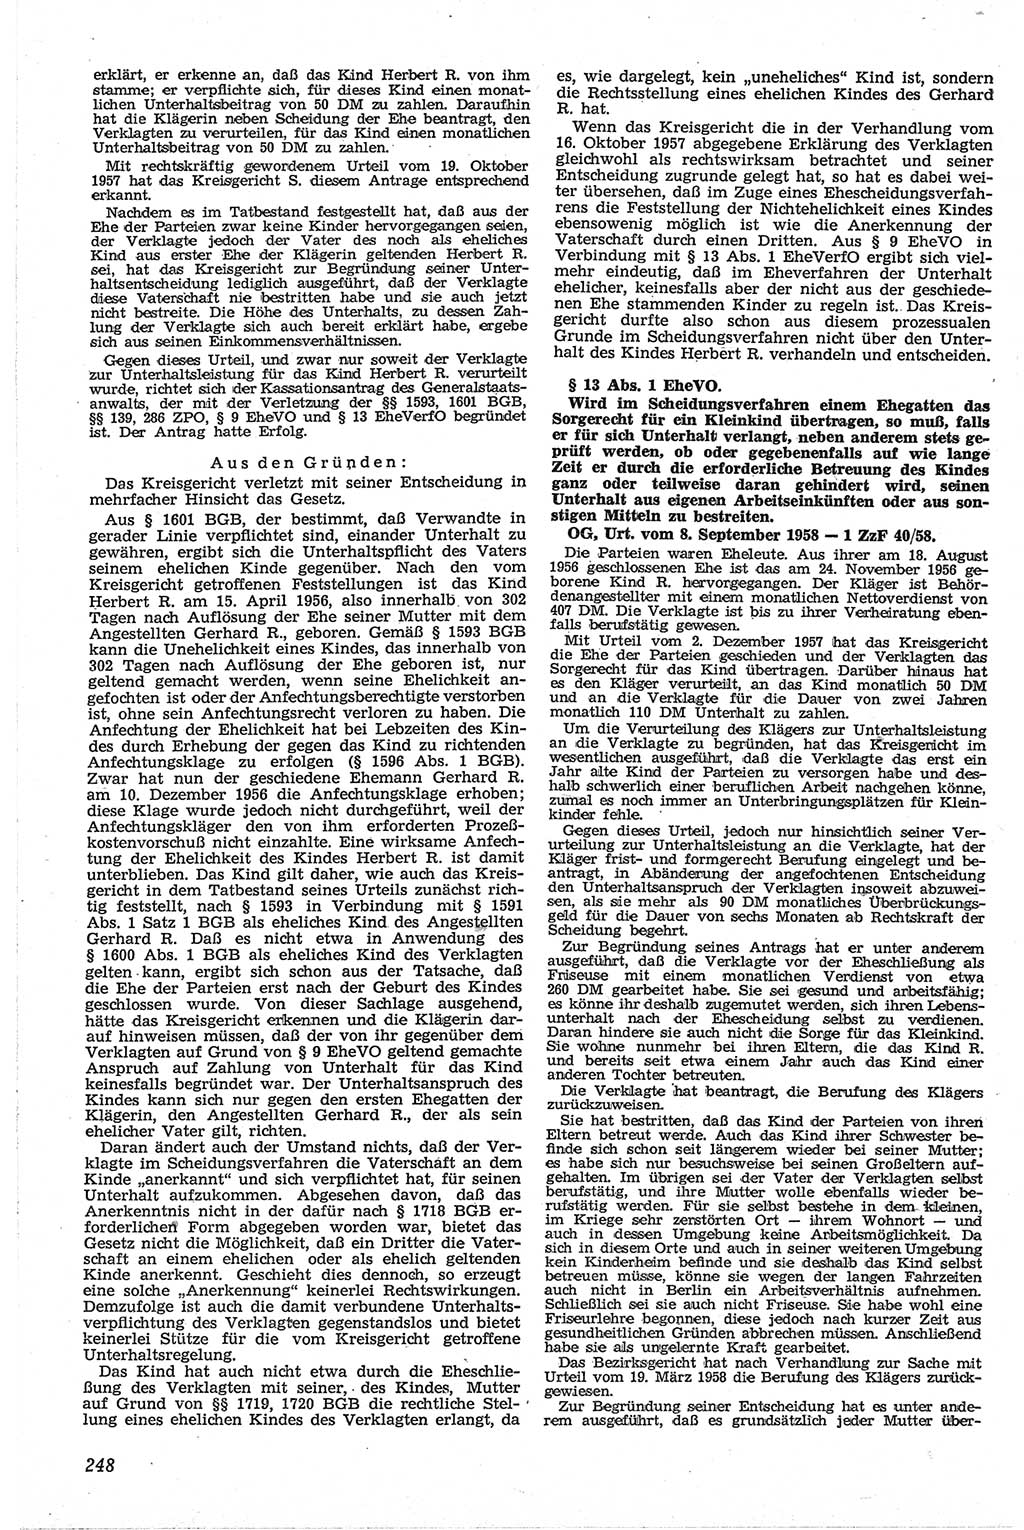 Neue Justiz (NJ), Zeitschrift für Recht und Rechtswissenschaft [Deutsche Demokratische Republik (DDR)], 13. Jahrgang 1959, Seite 248 (NJ DDR 1959, S. 248)